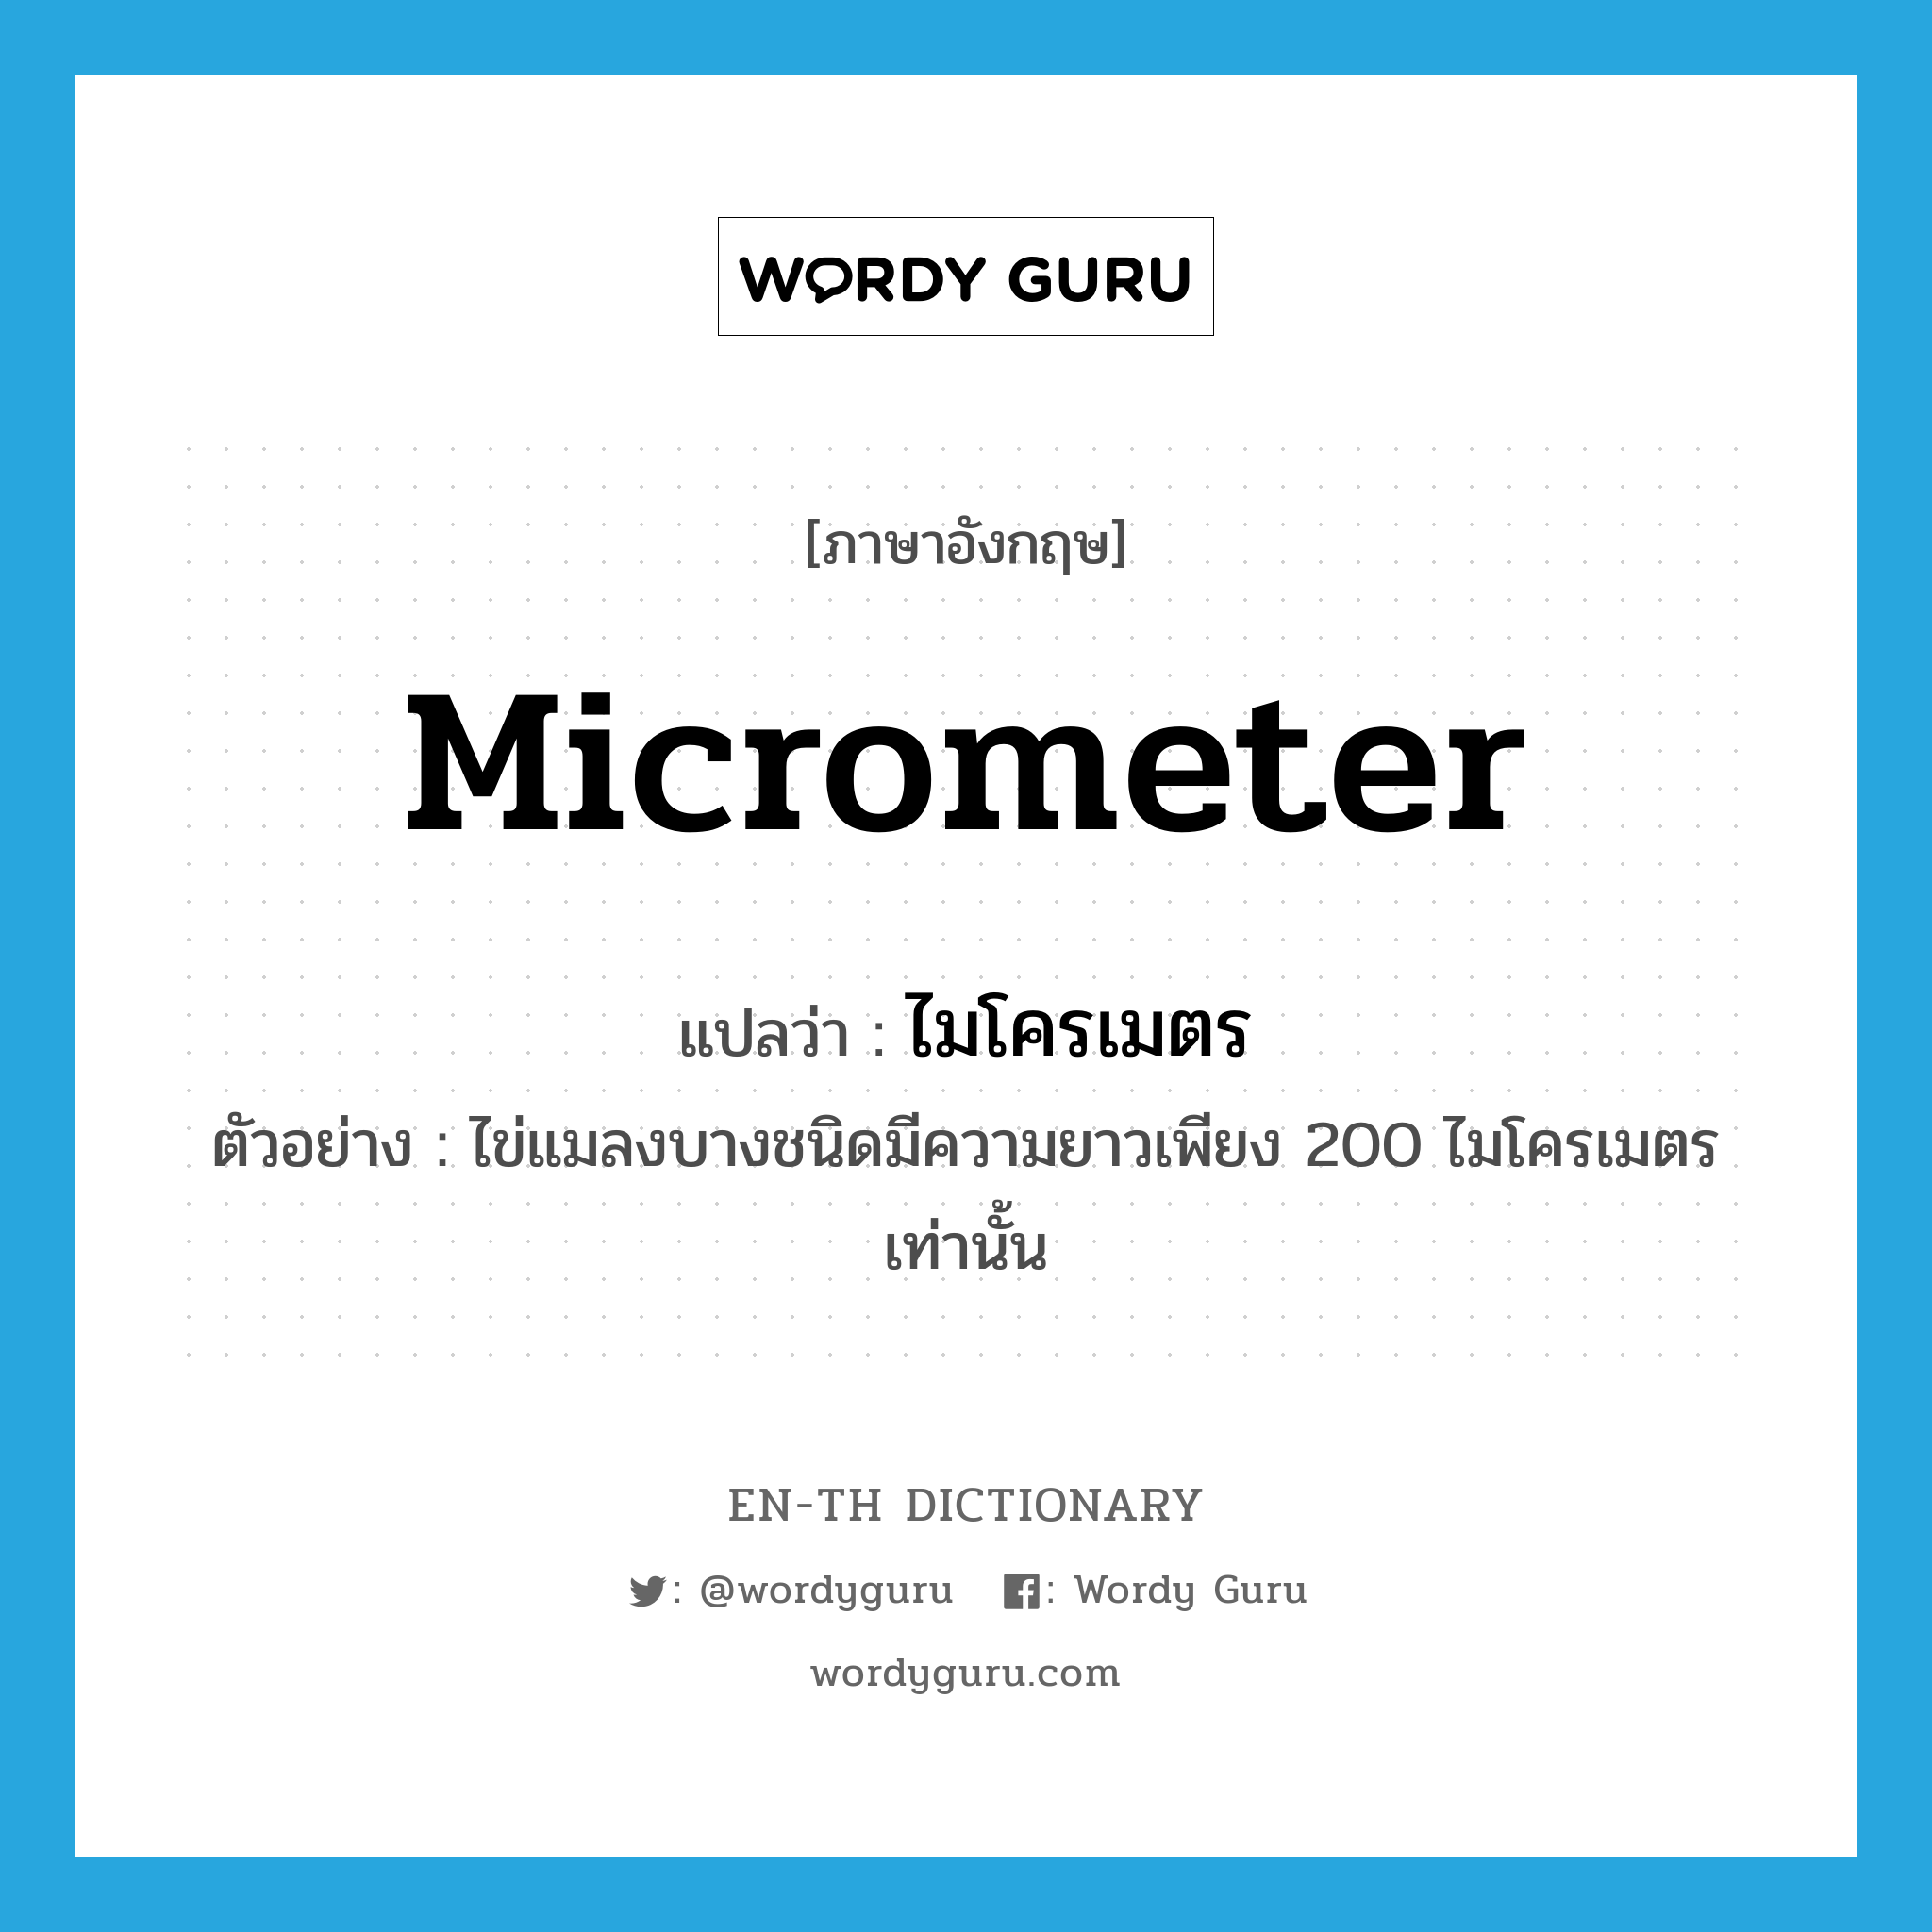 ไมโครเมตร ภาษาอังกฤษ?, คำศัพท์ภาษาอังกฤษ ไมโครเมตร แปลว่า micrometer ประเภท CLAS ตัวอย่าง ไข่แมลงบางชนิดมีความยาวเพียง 200 ไมโครเมตรเท่านั้น หมวด CLAS